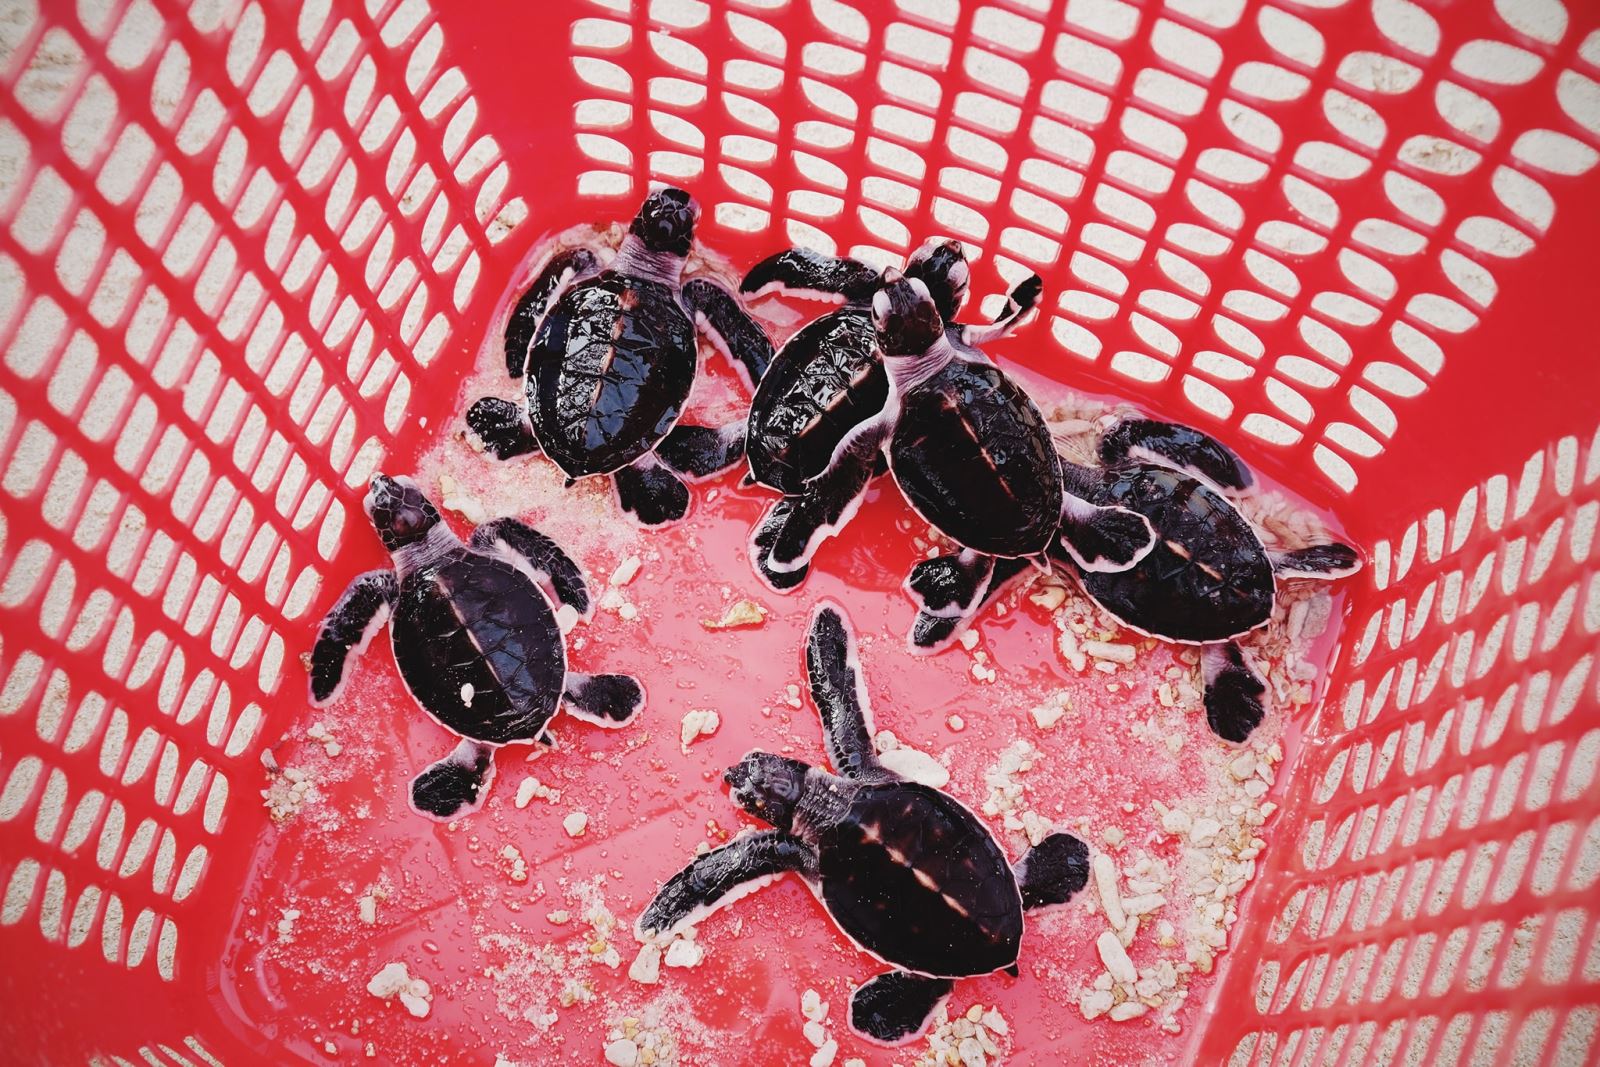 Hòn Bảy Cạnh là nơi rùa đẻ trứng nhiều nhất ở Côn Đảo